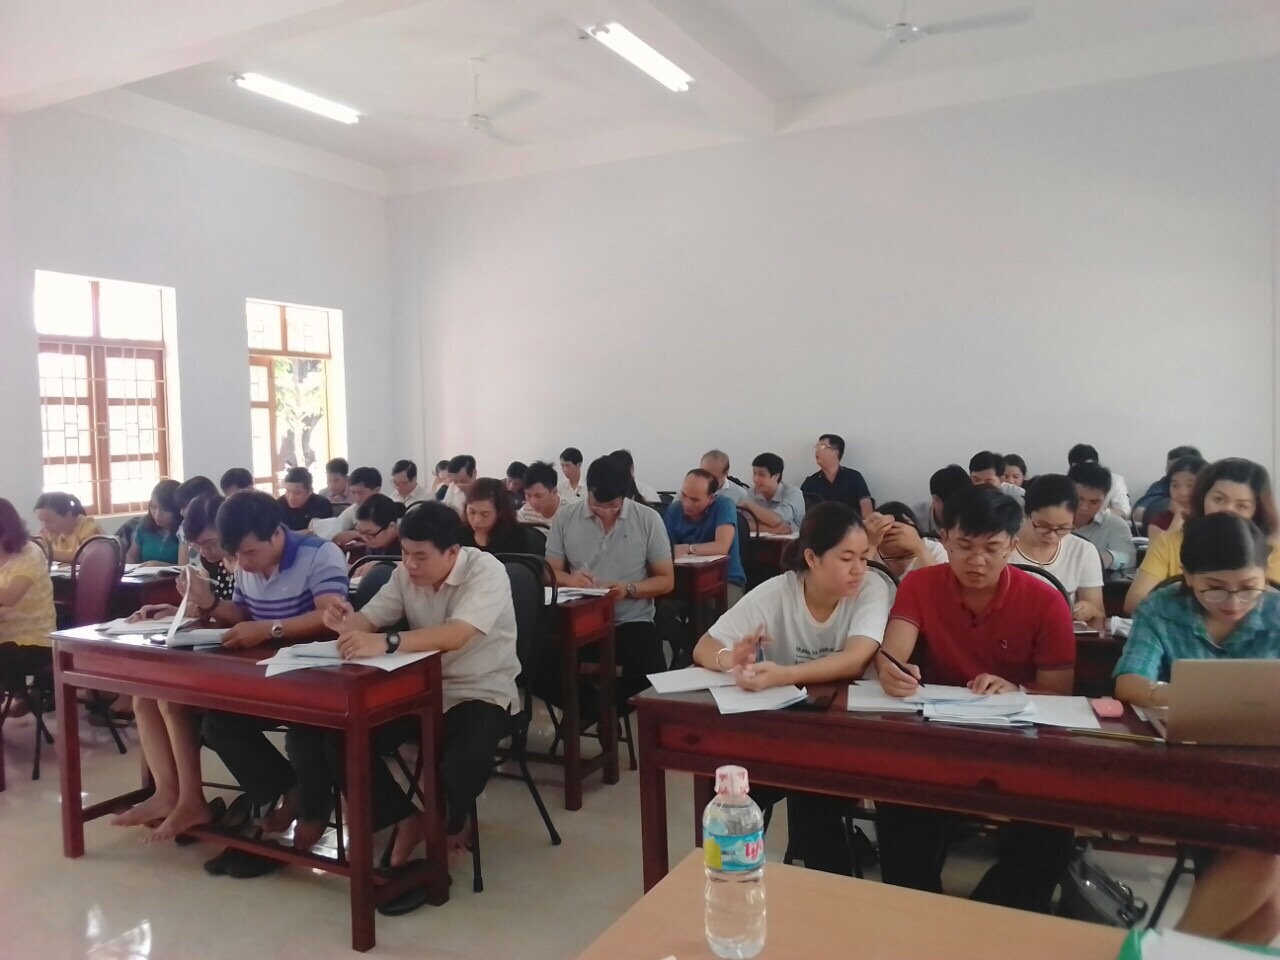 Khai giảng Khóa 12 Tại Trung tâm Giáo dục thường xuyên tỉnh Bình Định ngày 14 tháng 04 năm 2018 lớp luyện thi tiếng Pháp TCF Niveau 3 (B1).